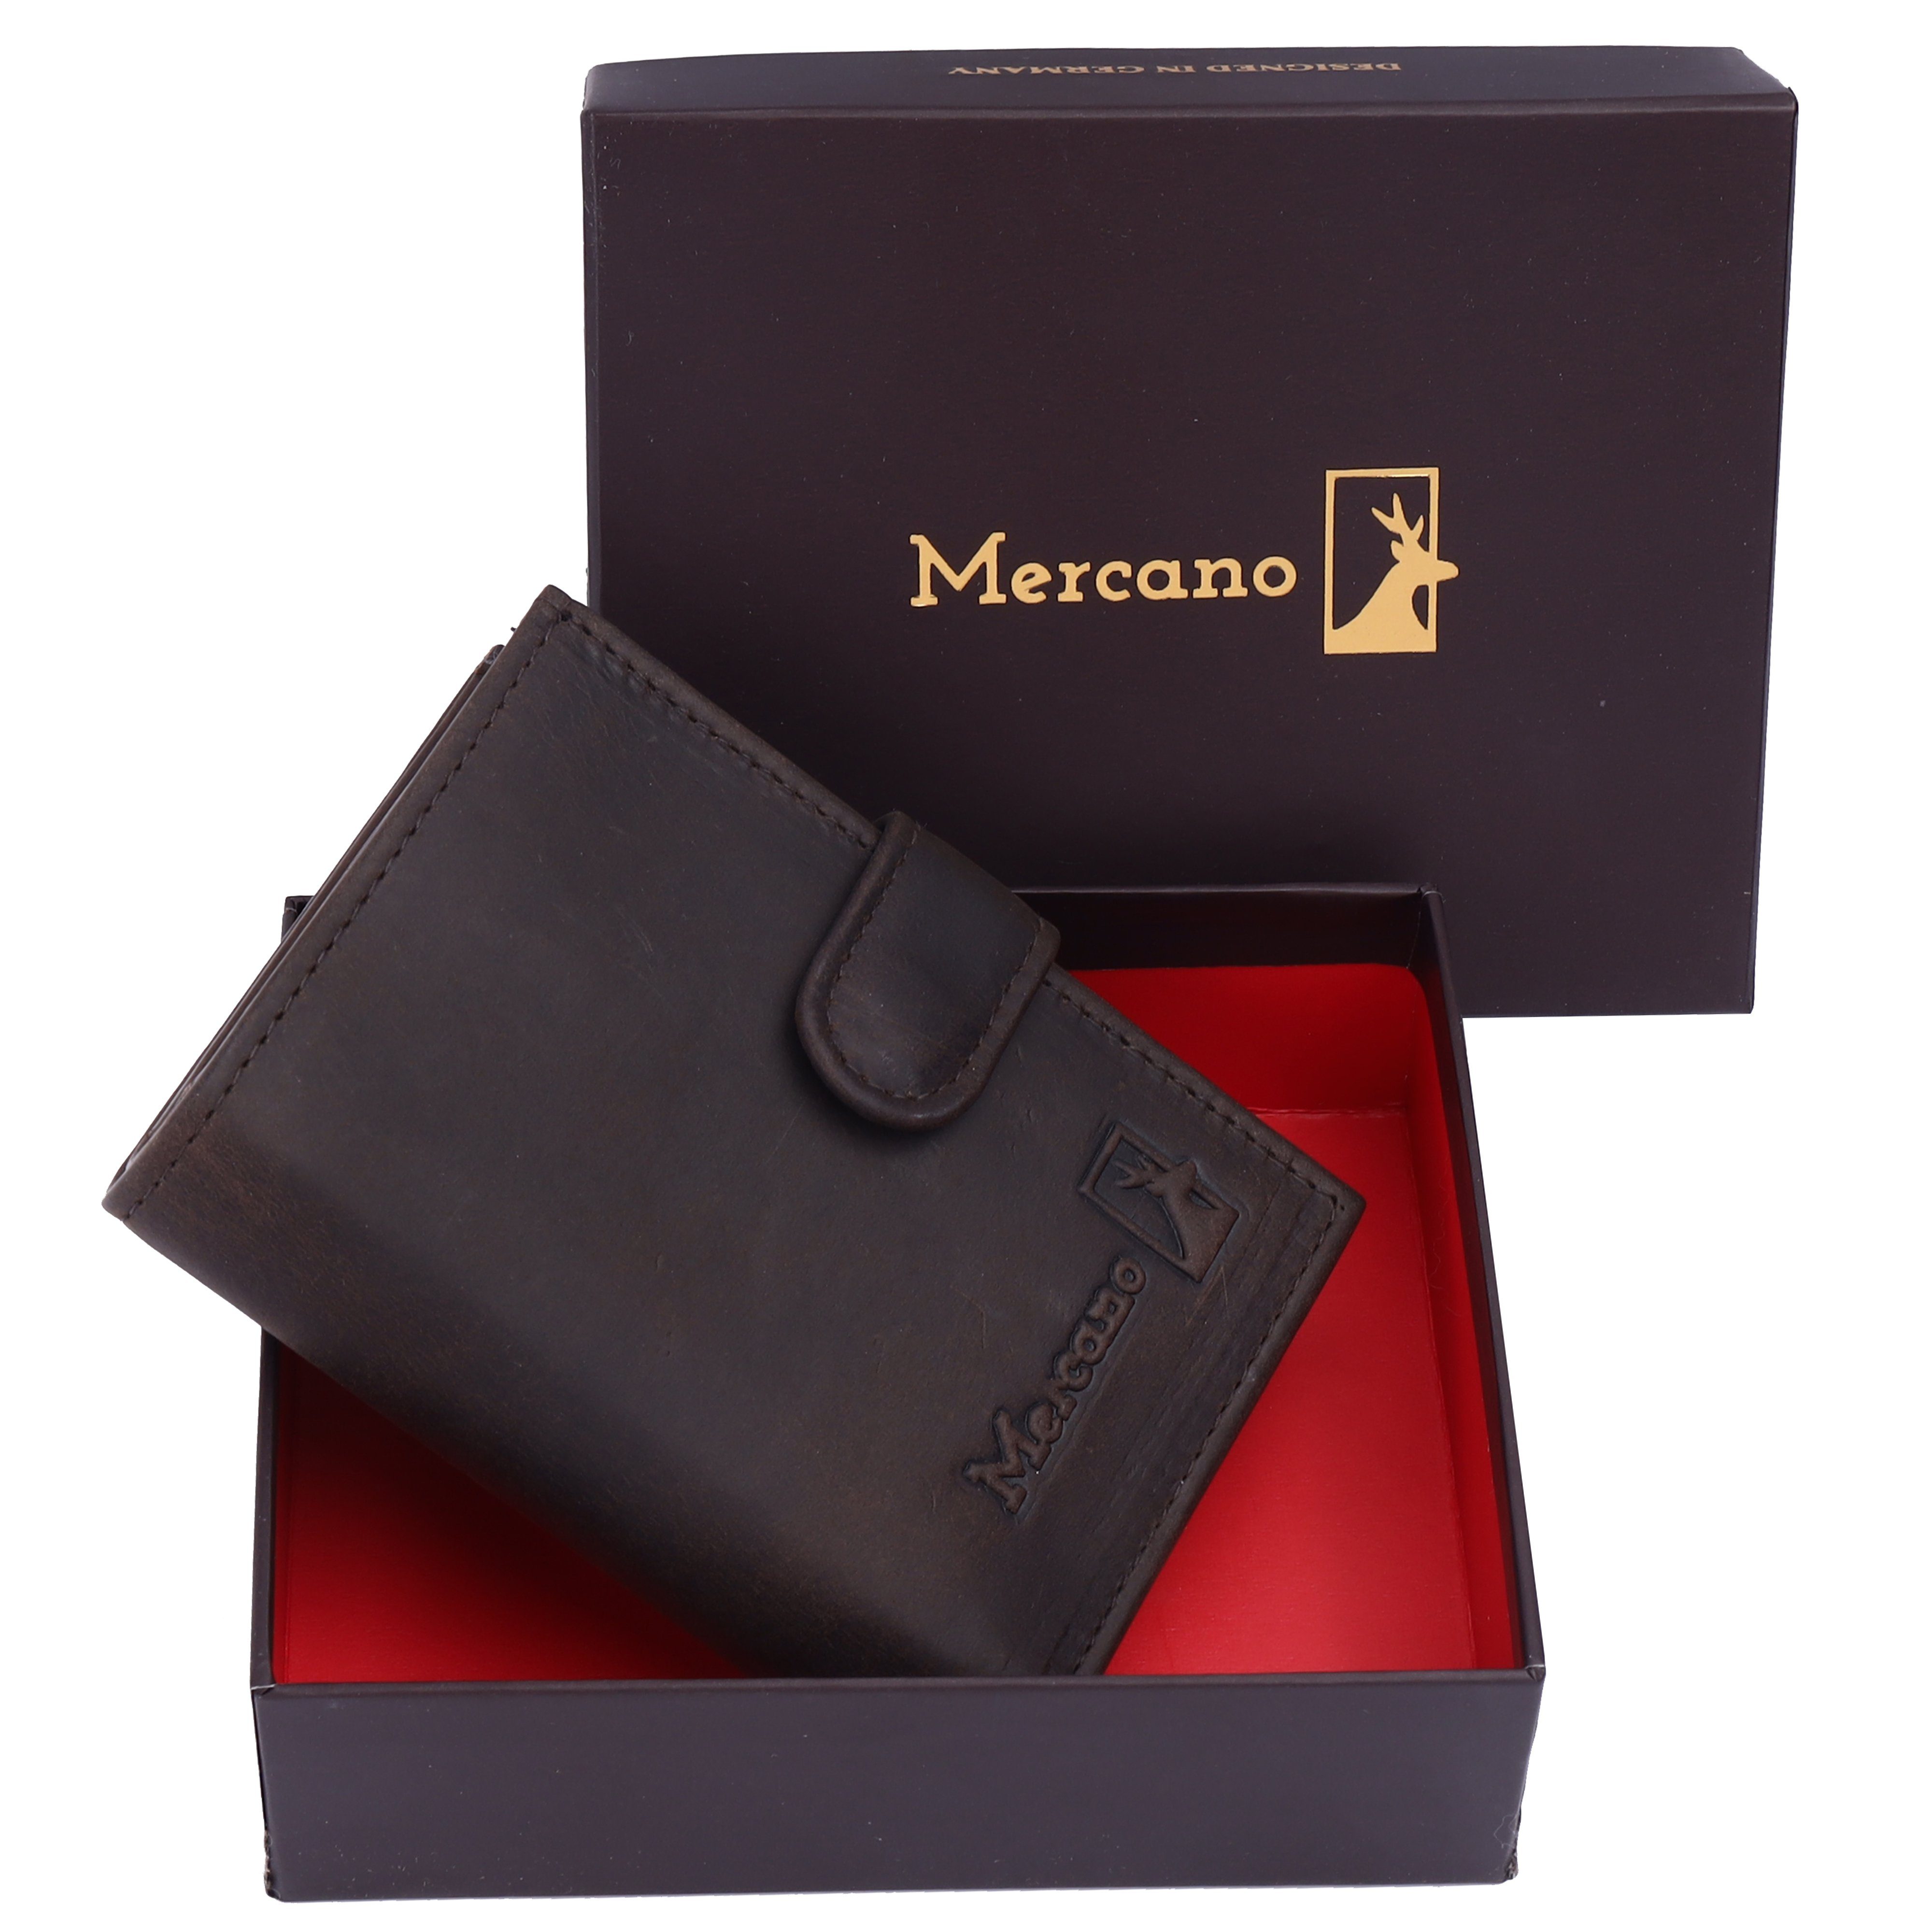 Flipcase für Mercano 100% Vintage Leder, Herren, aus Geldbörse inkl. RFID-Schutz, Damen und Geschenkbox, Dunkelbraune